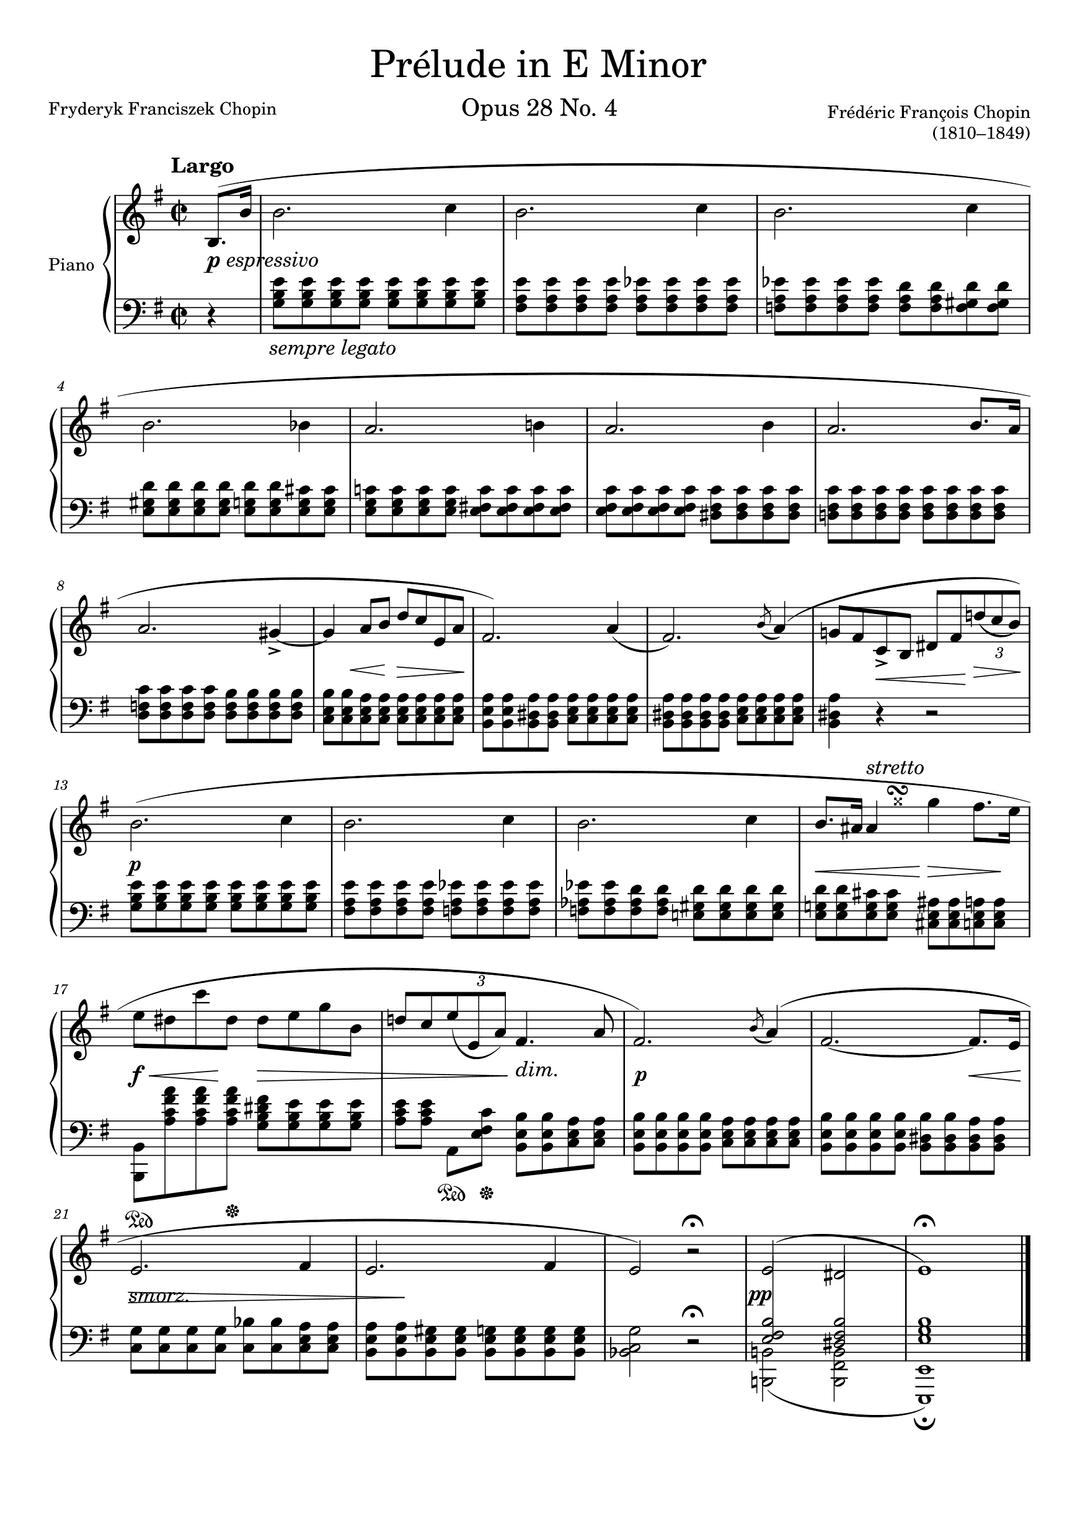 Preludio Op. 28 No. 4